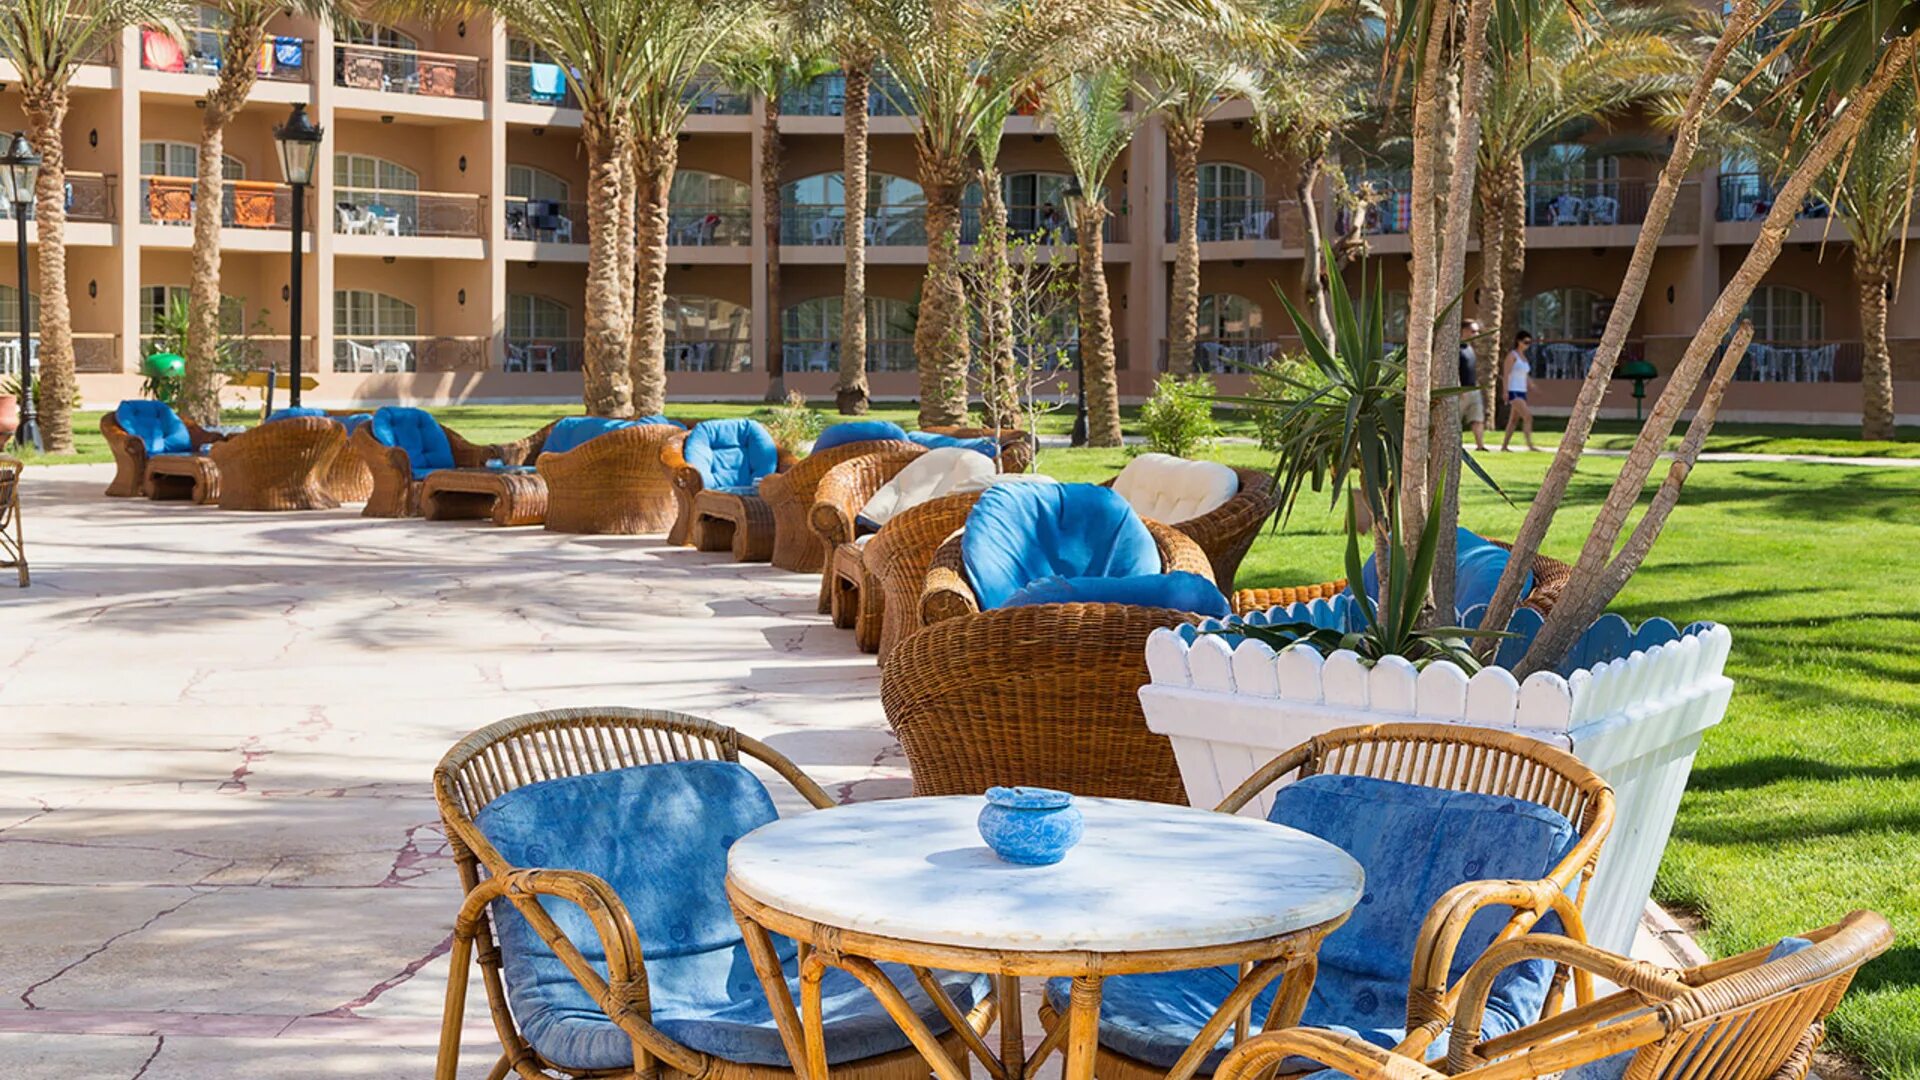 Moreno spa resort 4 египет хургада. Grand Hotel Hurghada 4 Египет. Хургада Египет Сива Гранд. Сива Гранд Бич отель Хургада. Siva Grand Beach 4 Египет Хургада.